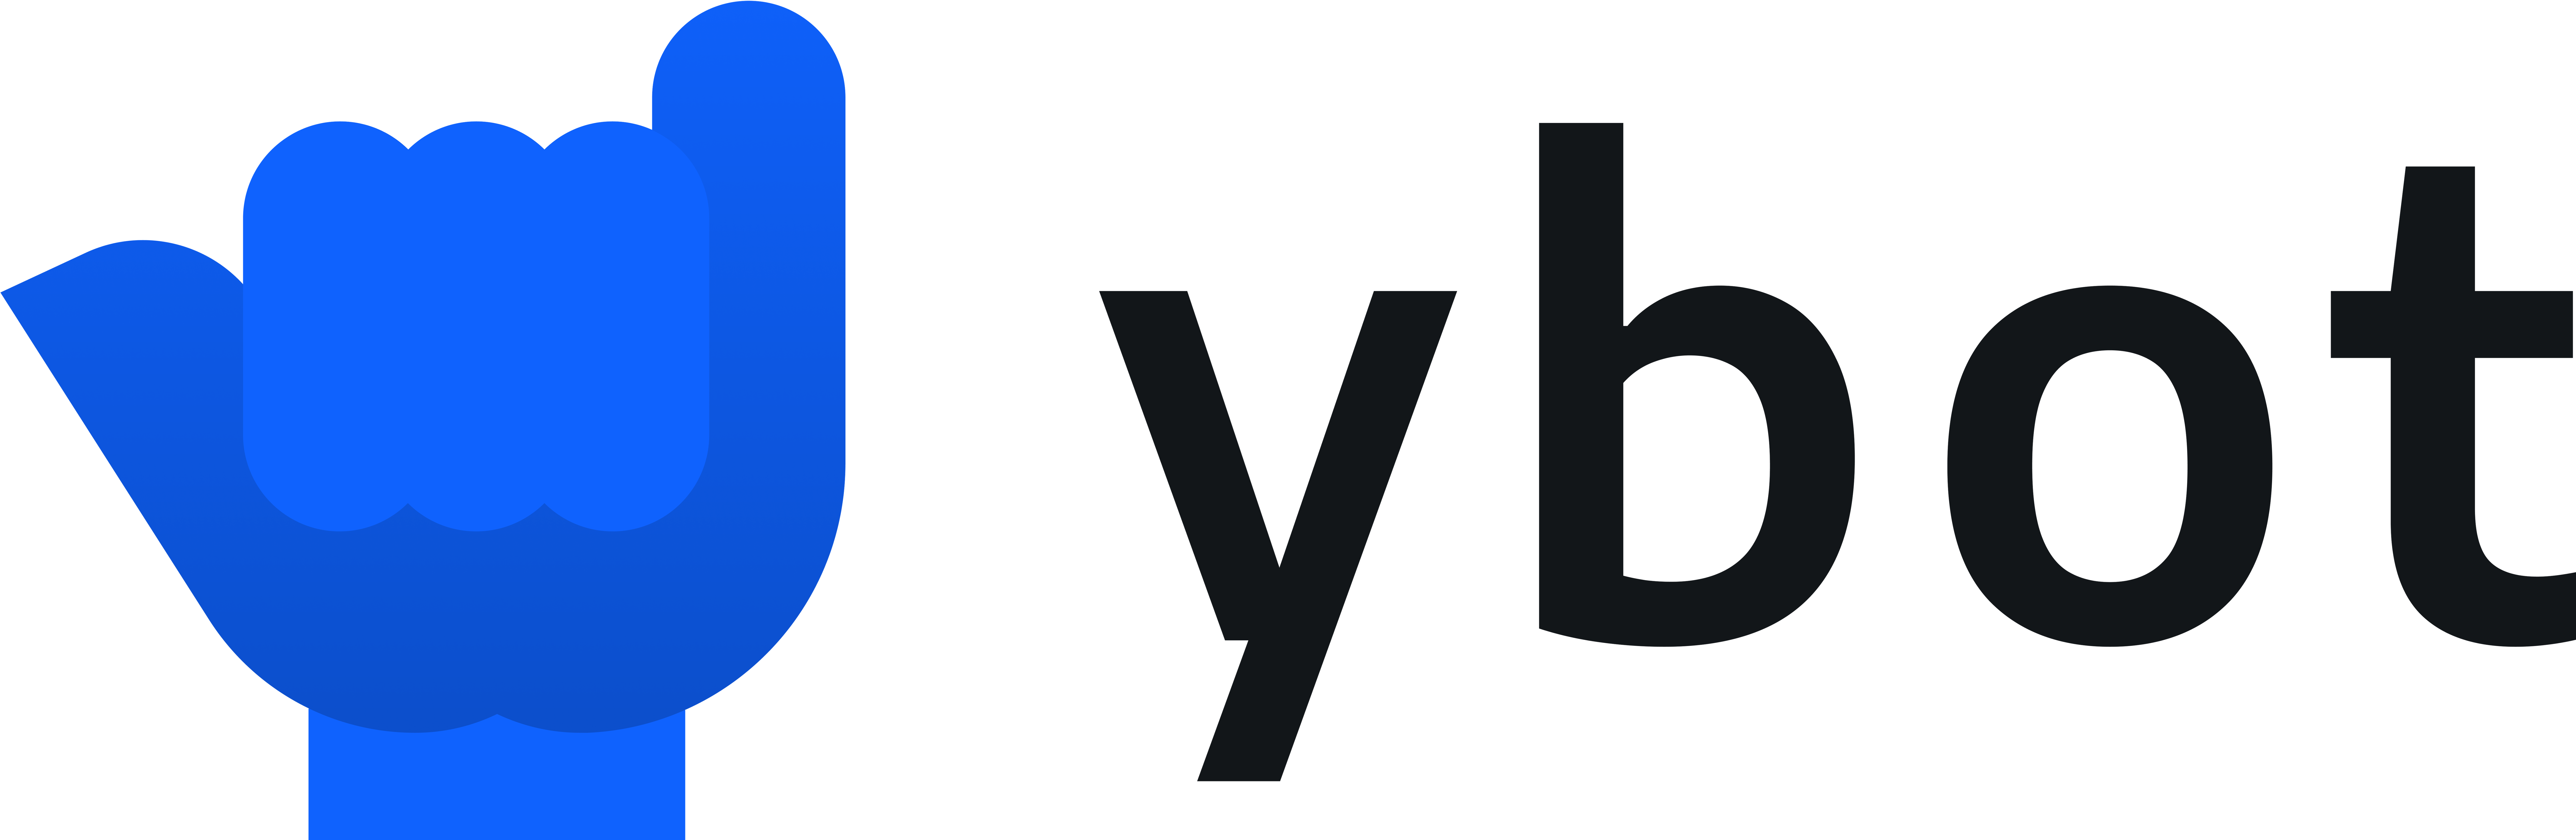 ybot logo color